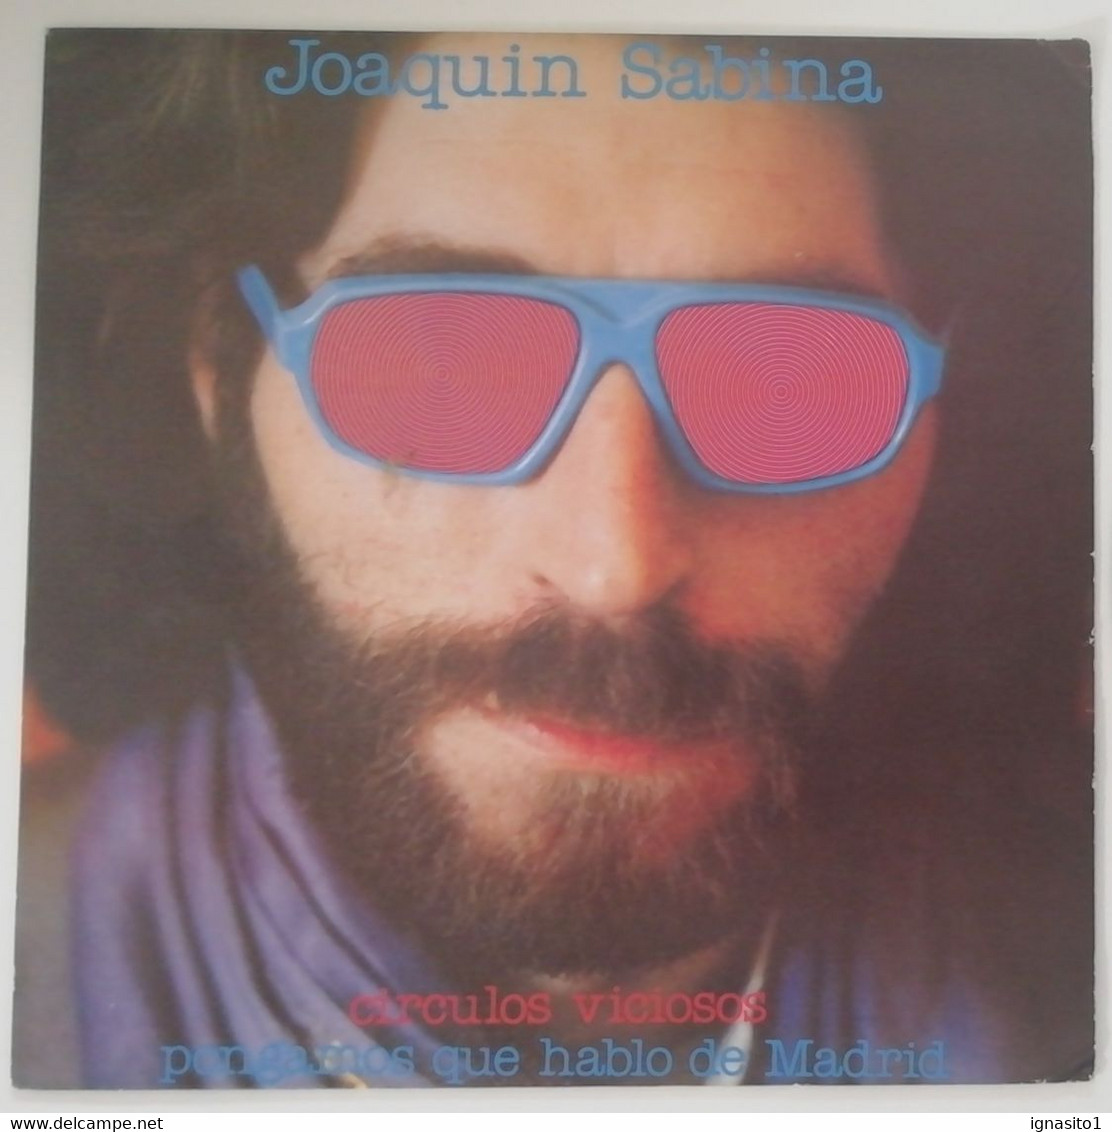 Joaquin Sabina - Círculos Viciosos / Pongamos Que Hablo De Madrid - Disco Promocional - Año 1981 - Autres - Musique Espagnole